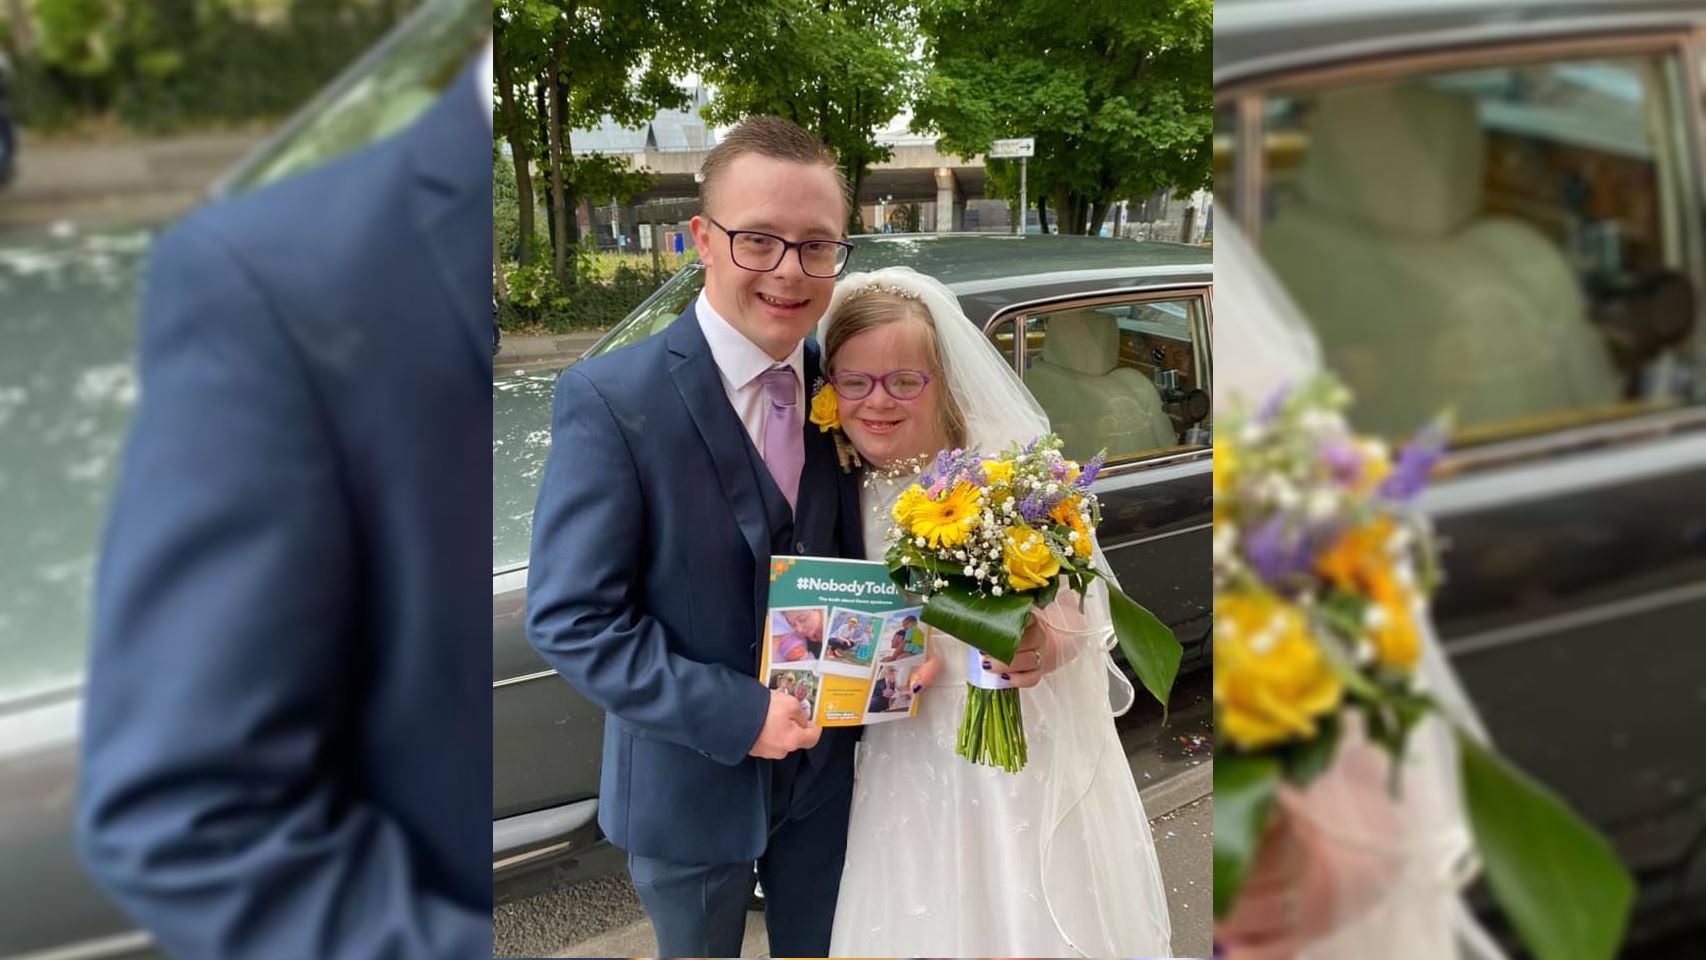 Összeházasodott a Down-szindrómás pár, 12 ezren nézték meg az esküvőt az interneten